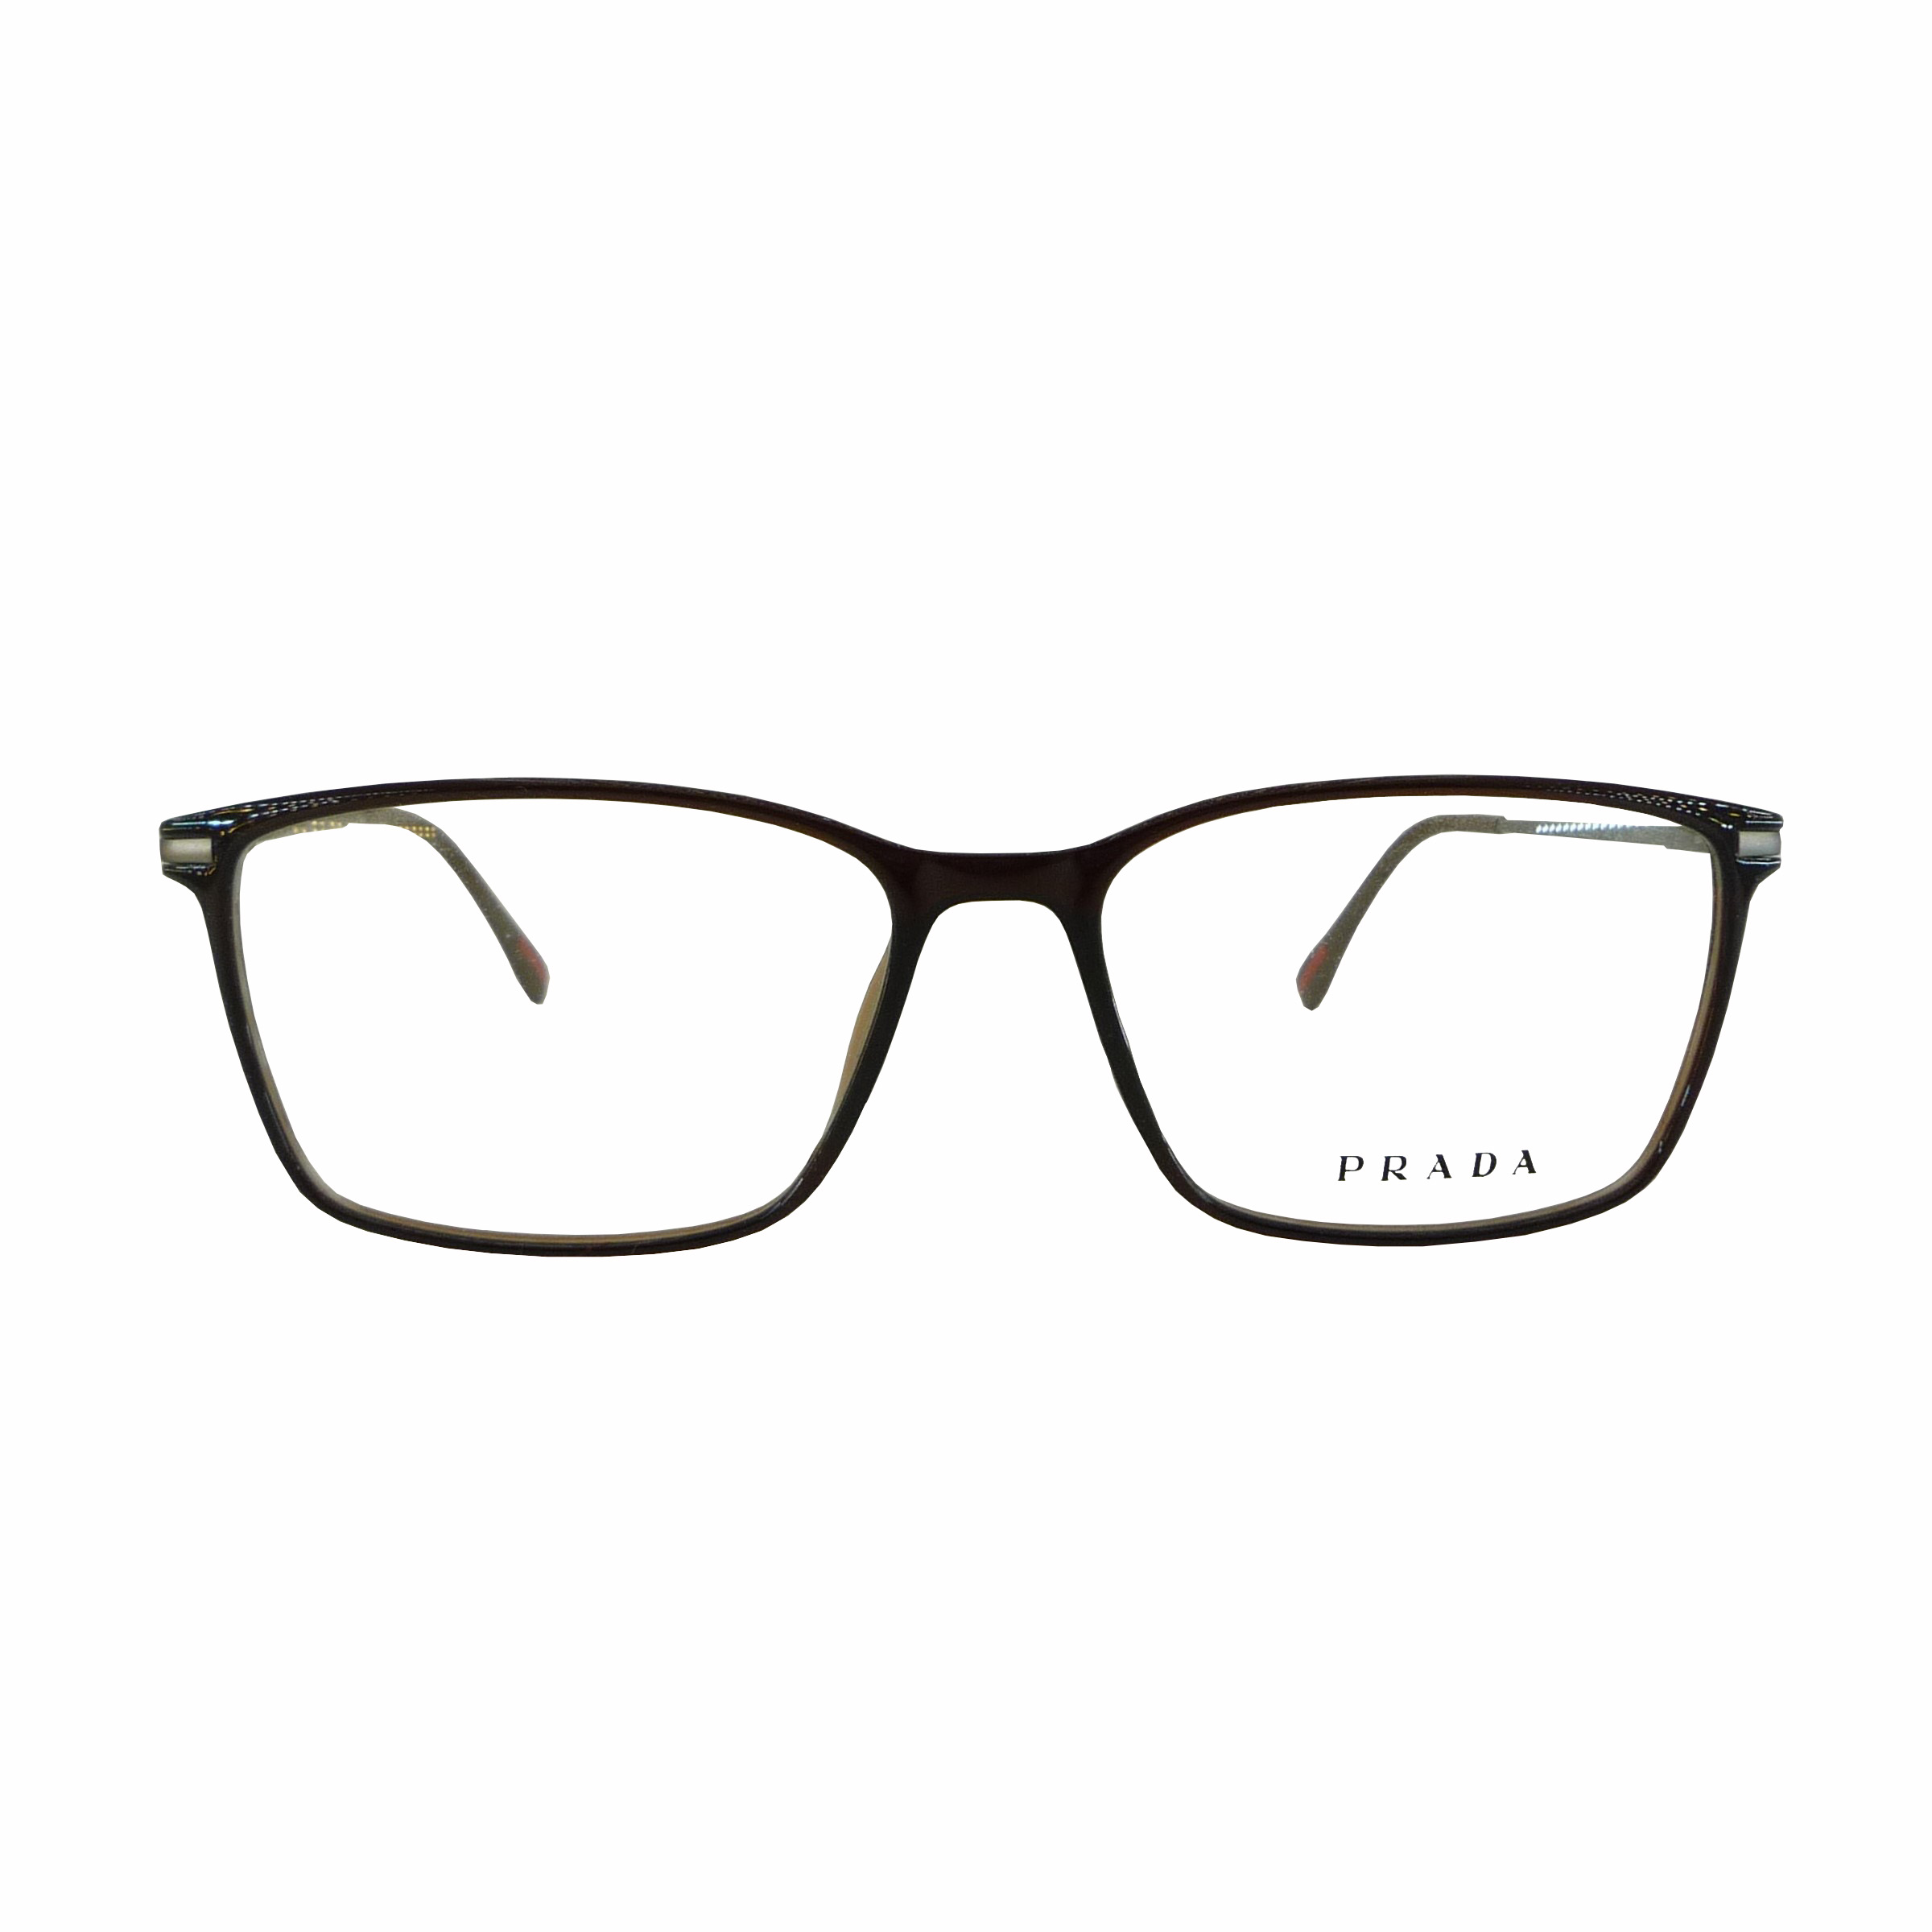 فریم عینک طبی پرادا مدل T2178-1142C4